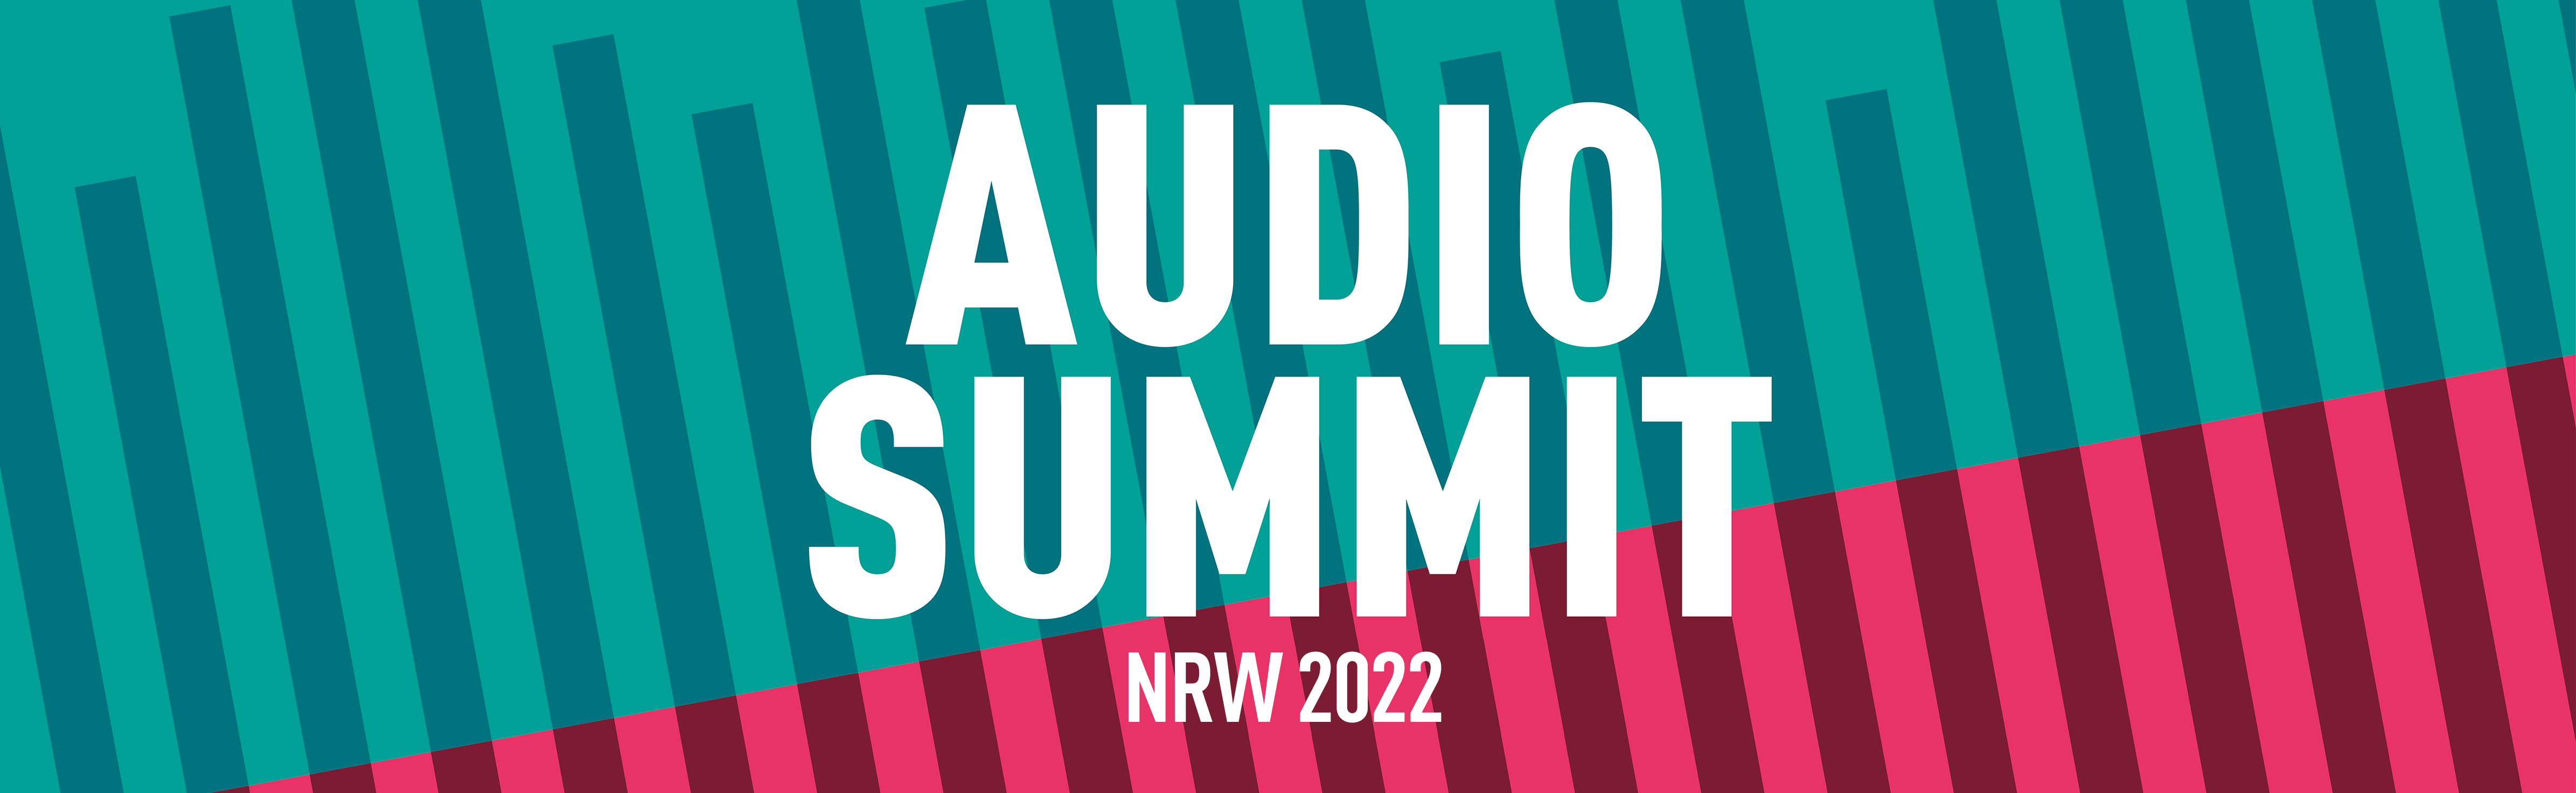 Audio Summit NRW 2022